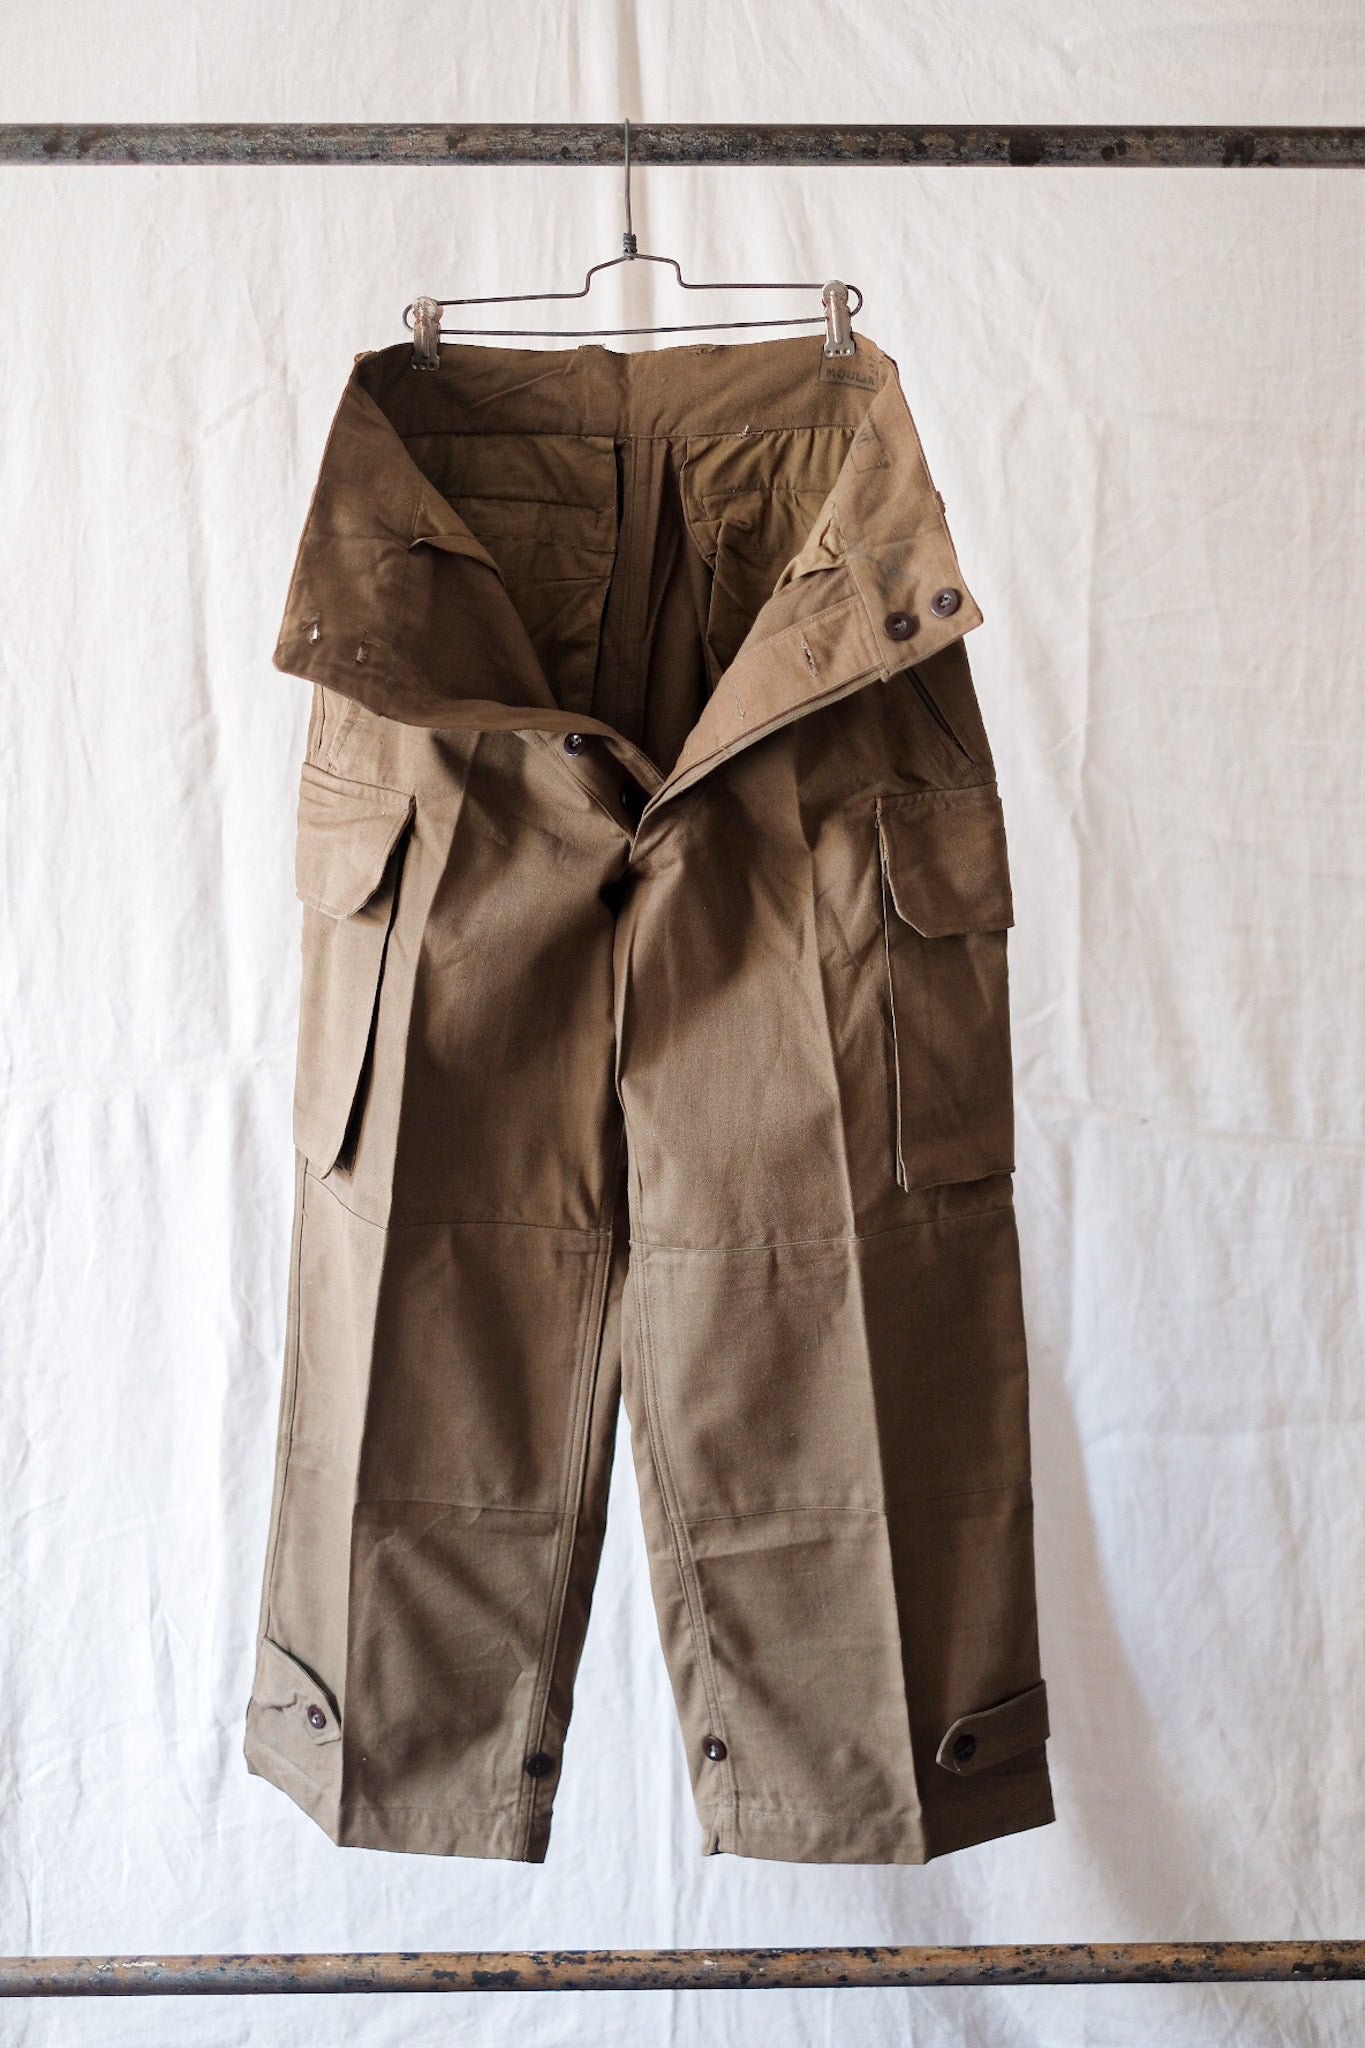 [〜50年代]法國陸軍M47野戰士褲的大小。84xc“死股”